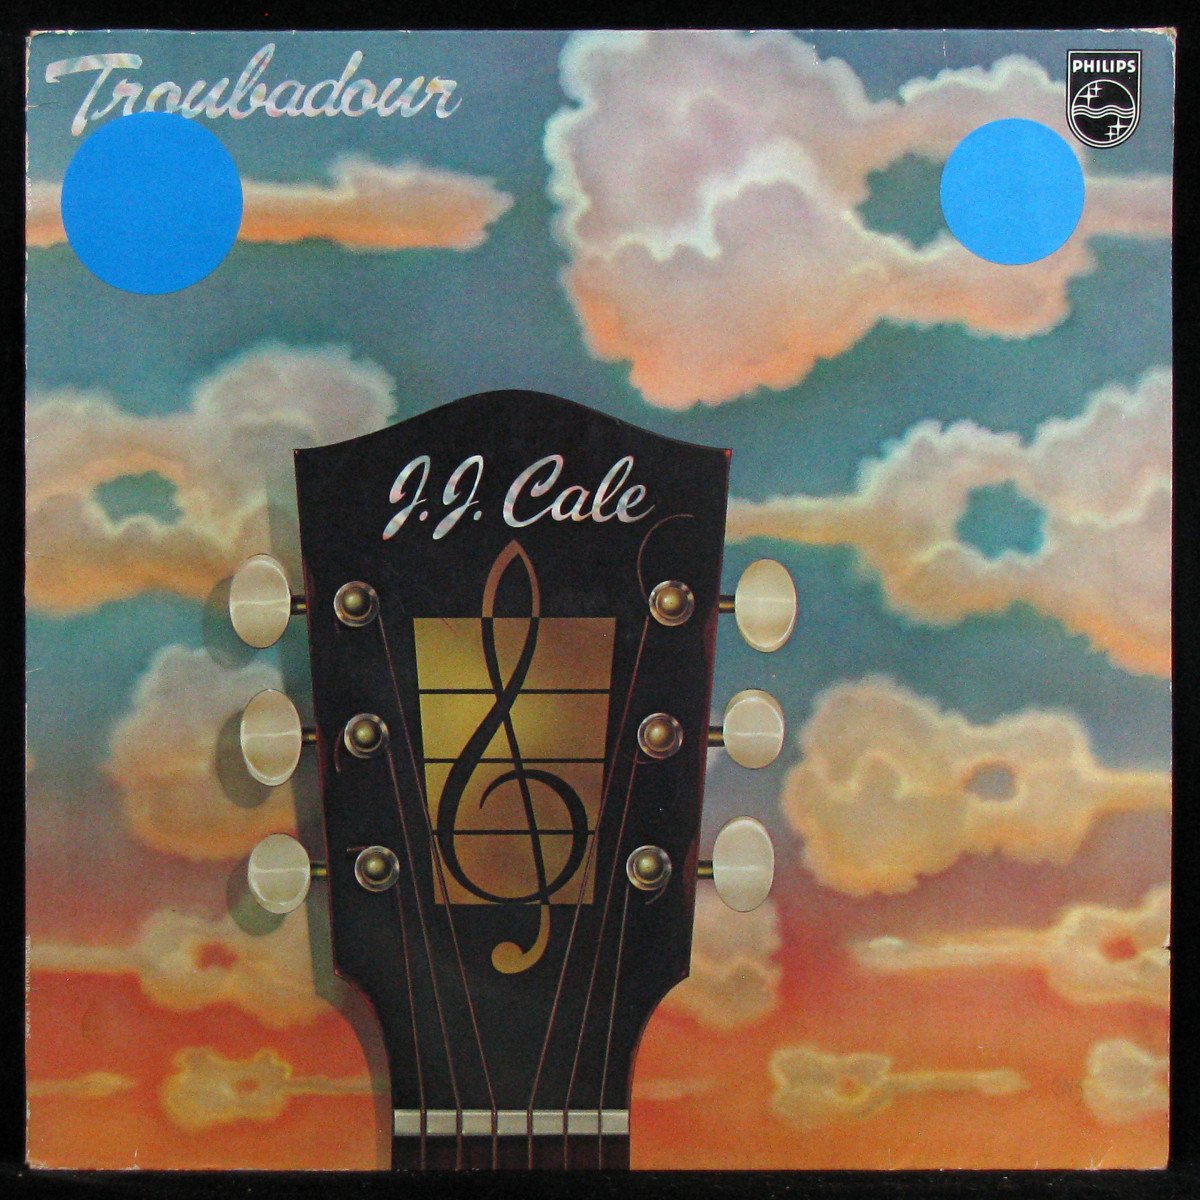 LP J.J. Cale — Troubadour фото